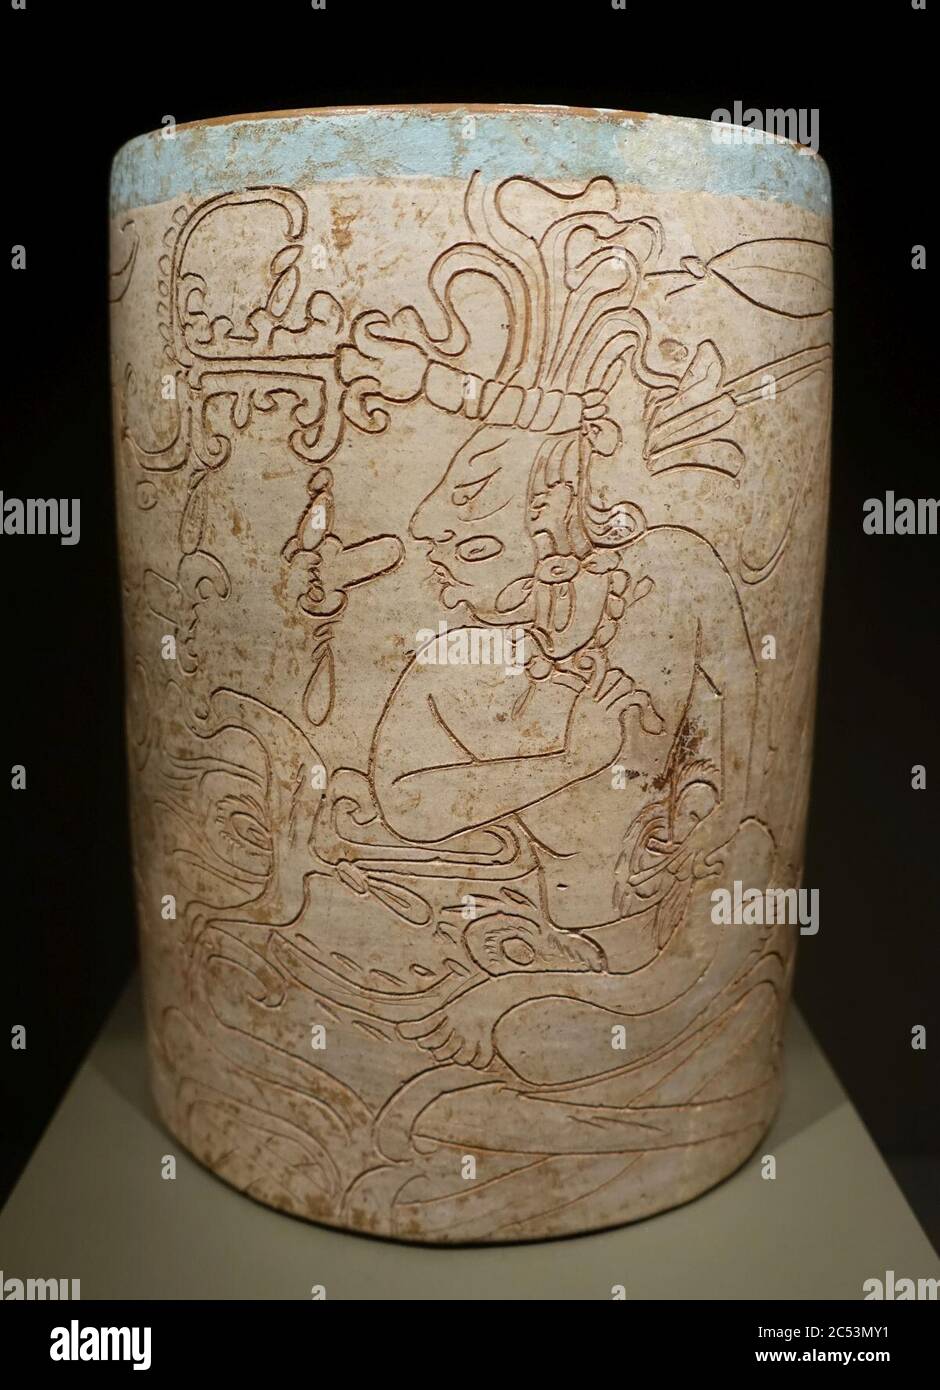 Vaisseau cylindrique incisé représentant un Seigneur et Dieu K, Maya, état Campeche ou péninsule du Yucatan, période classique tardive, c. 600-900 AD, céramique Banque D'Images